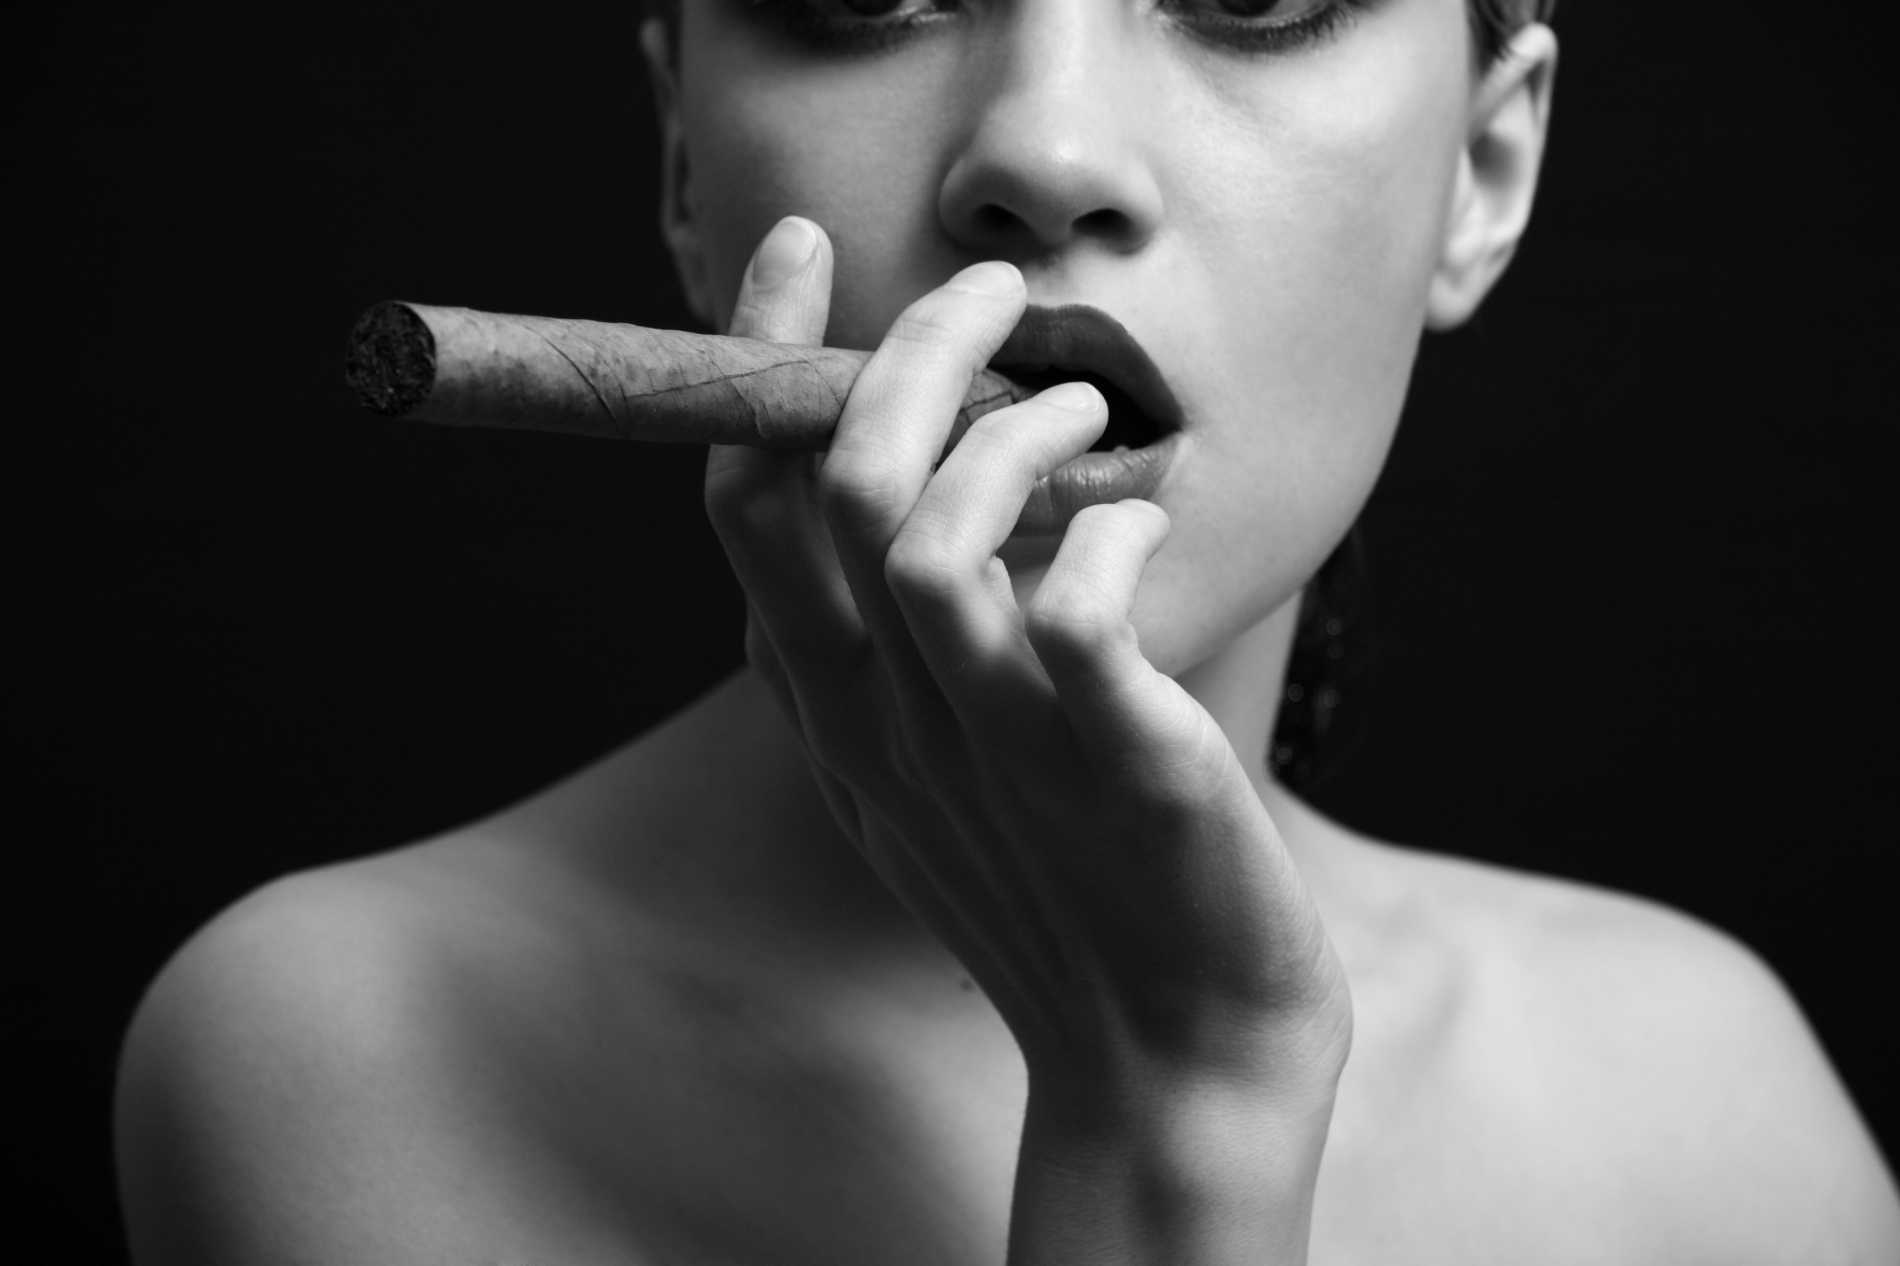 Унитазная эротика с сигаретой во рту